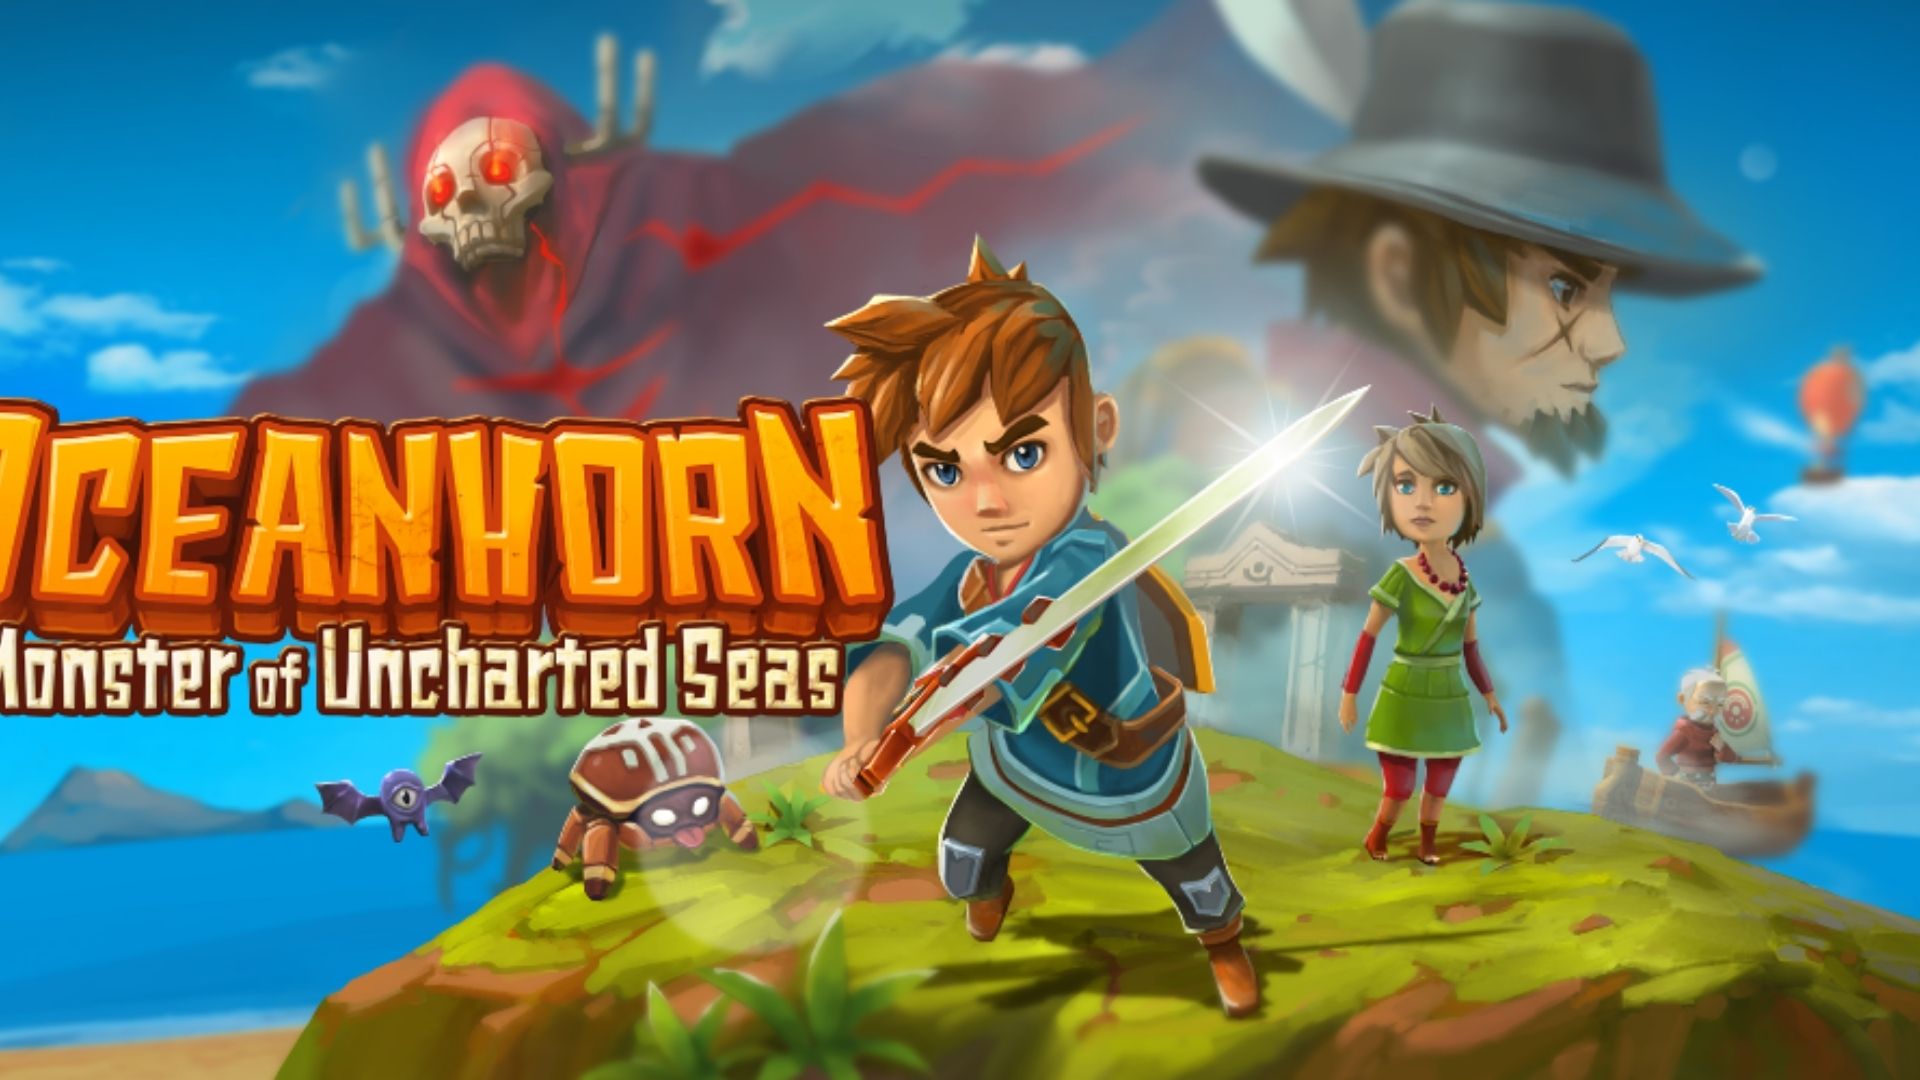 Arte do jogo Oceanhorn mostrando o personagem principal empunhando sua espada com vários personagens ao fundo.